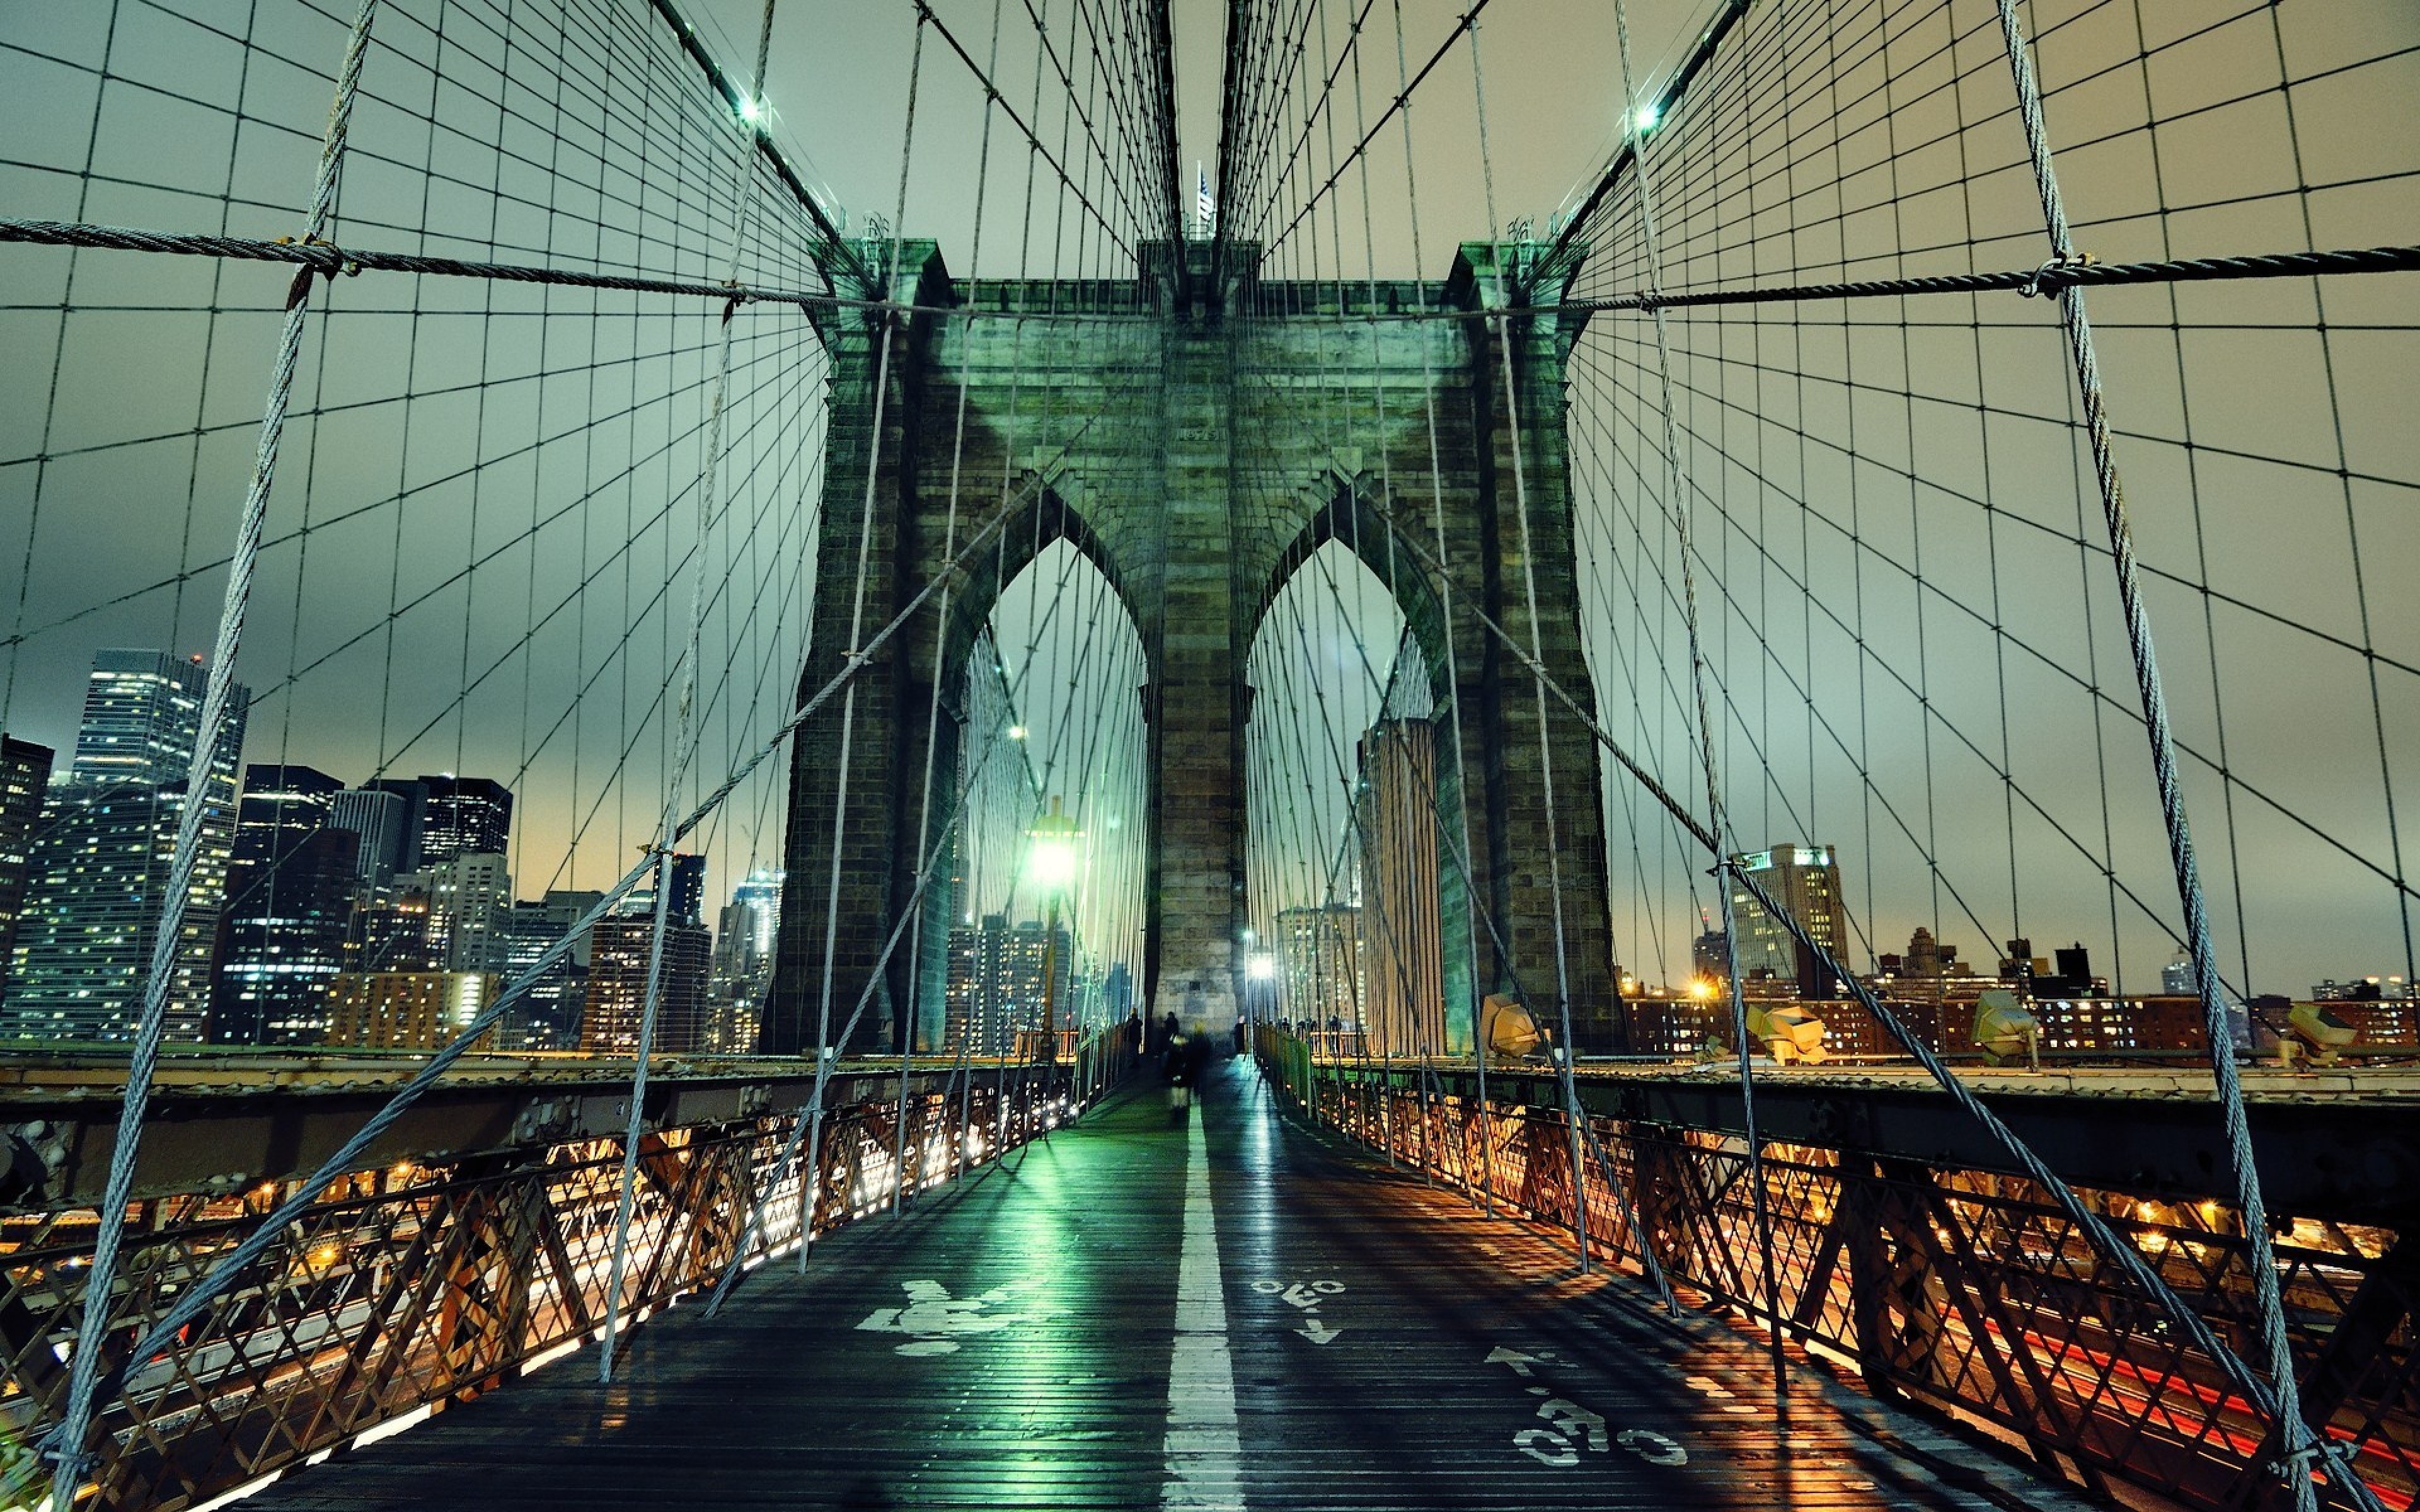 Обои на телефон самые красивые в мире. Буринский мост Нью-Йорк. Манхэттен мост Нью-Йорк. Нью-Йорк Сити Бруклинский мост. Бруклинский мост Нью-Йорк ночью.